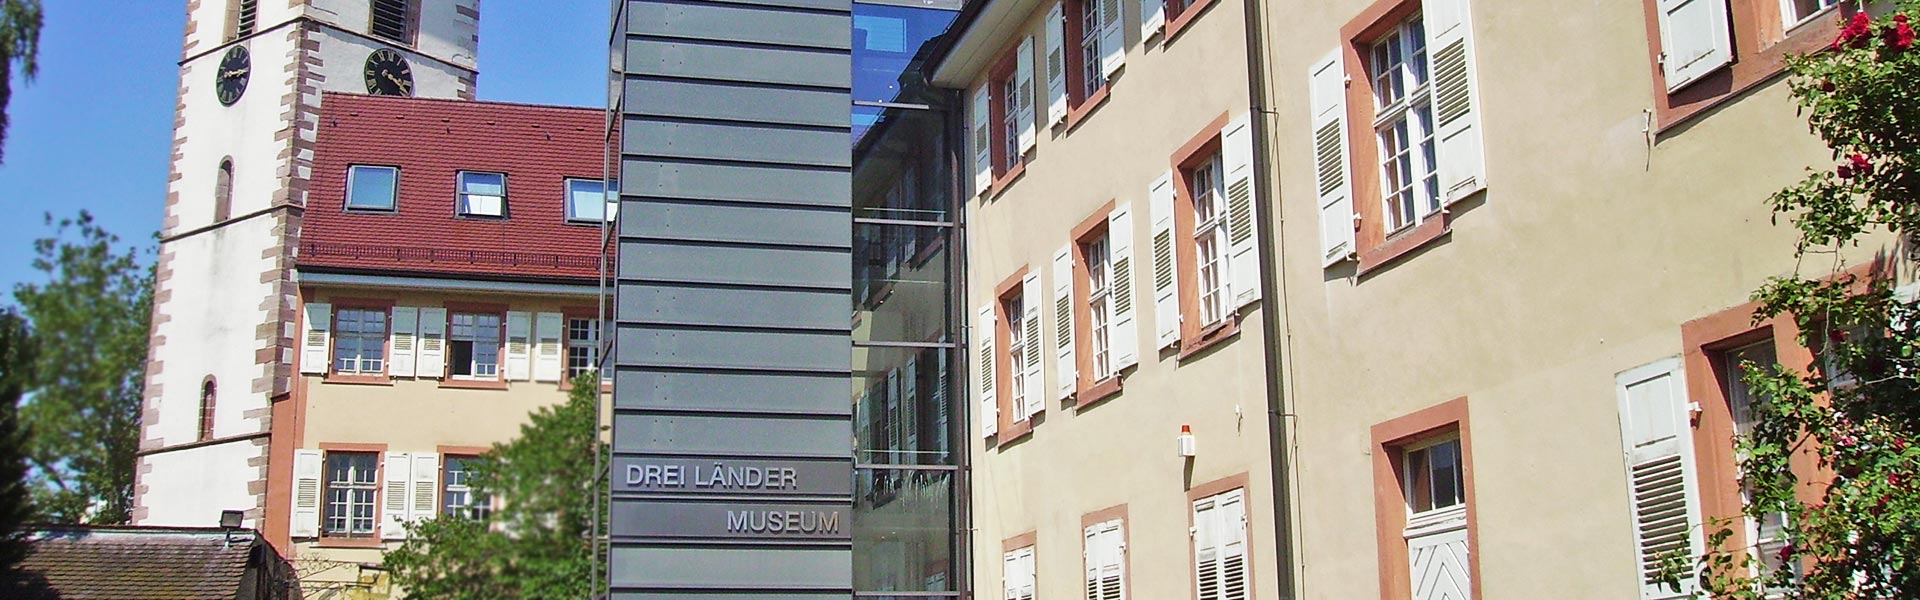 Lörrach & die Regio - touristische Vielfalt - Dreiländermuseum